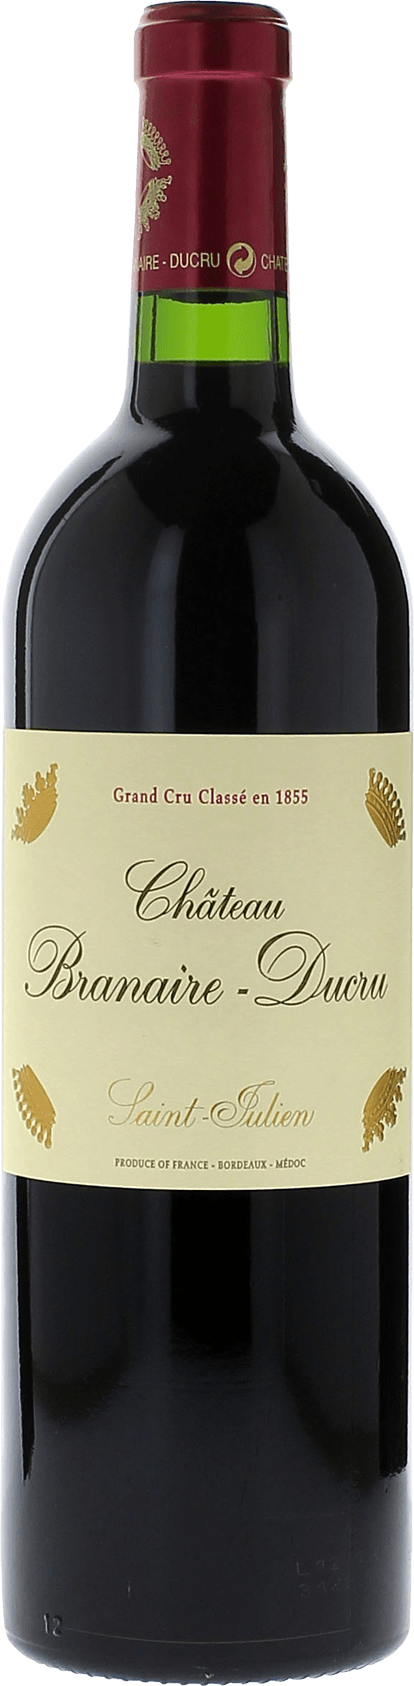 Branaire ducru 2000 4me Grand cru class Saint-Julien, Bordeaux rouge